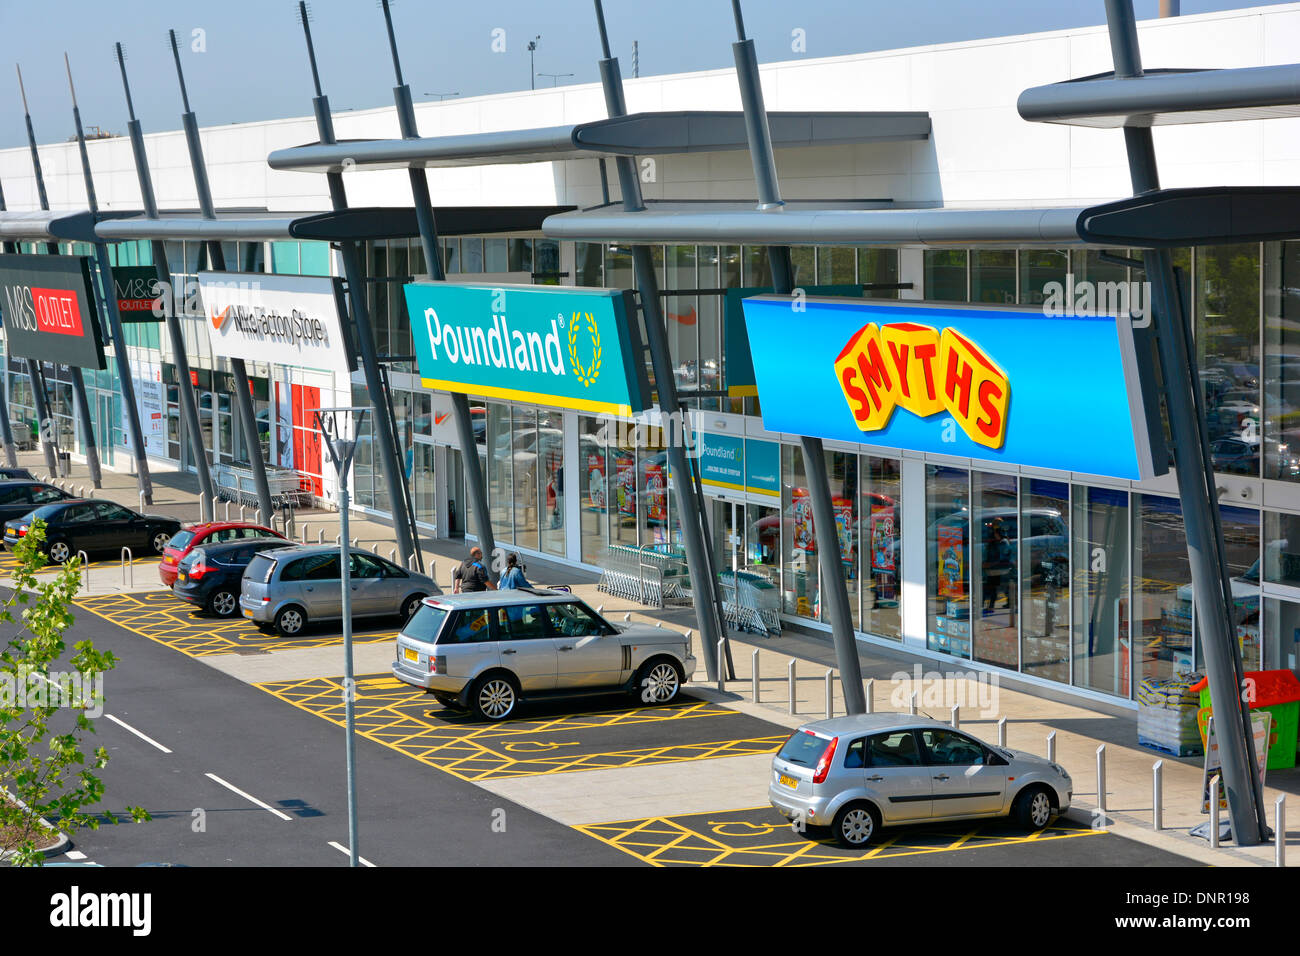 Gratuitement des places handicapés à l'extérieur parc de vente au détail, y compris les unités d'achats Smyths, Poundland, Nike, et M&S outlet stores Thurrock Essex UK Shopping Park Banque D'Images